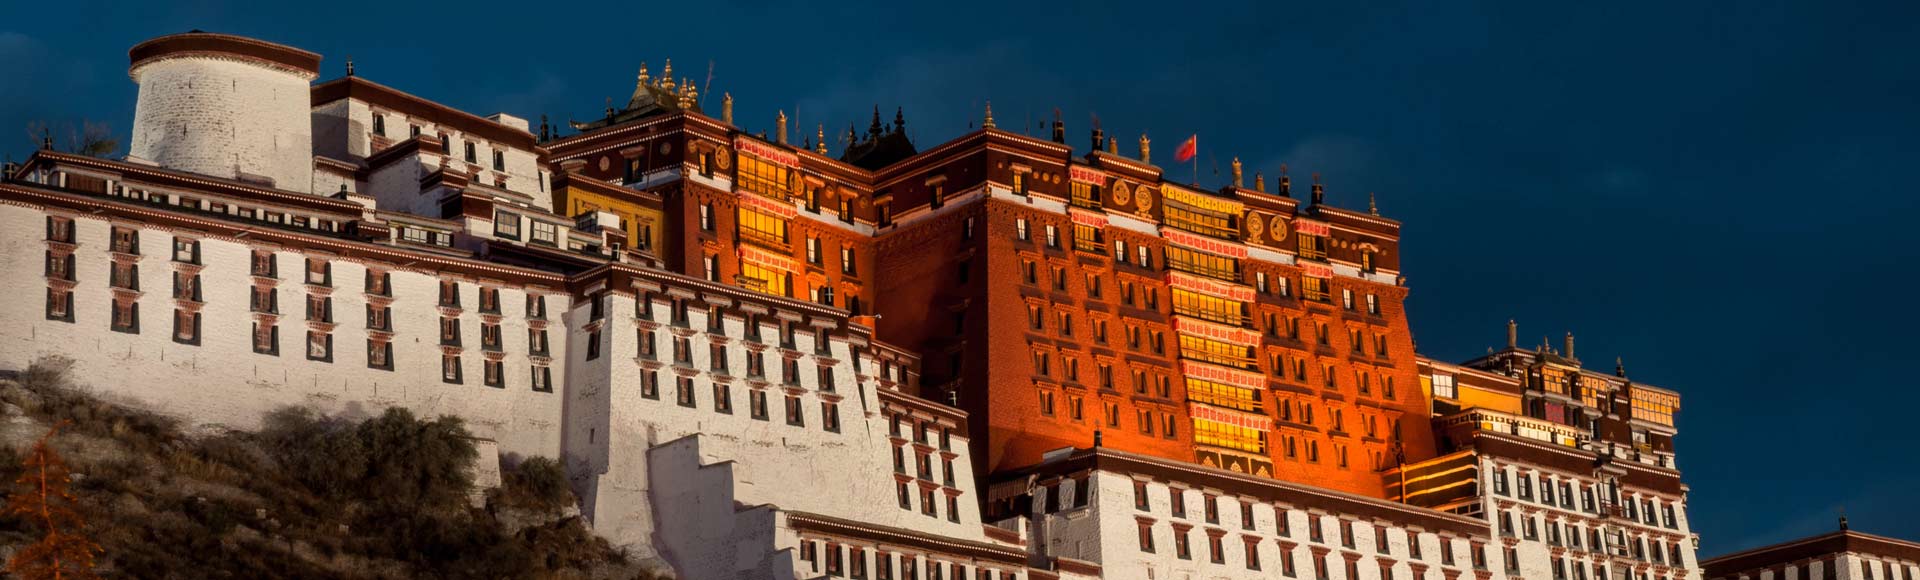 3 Days Lhasa City Tour